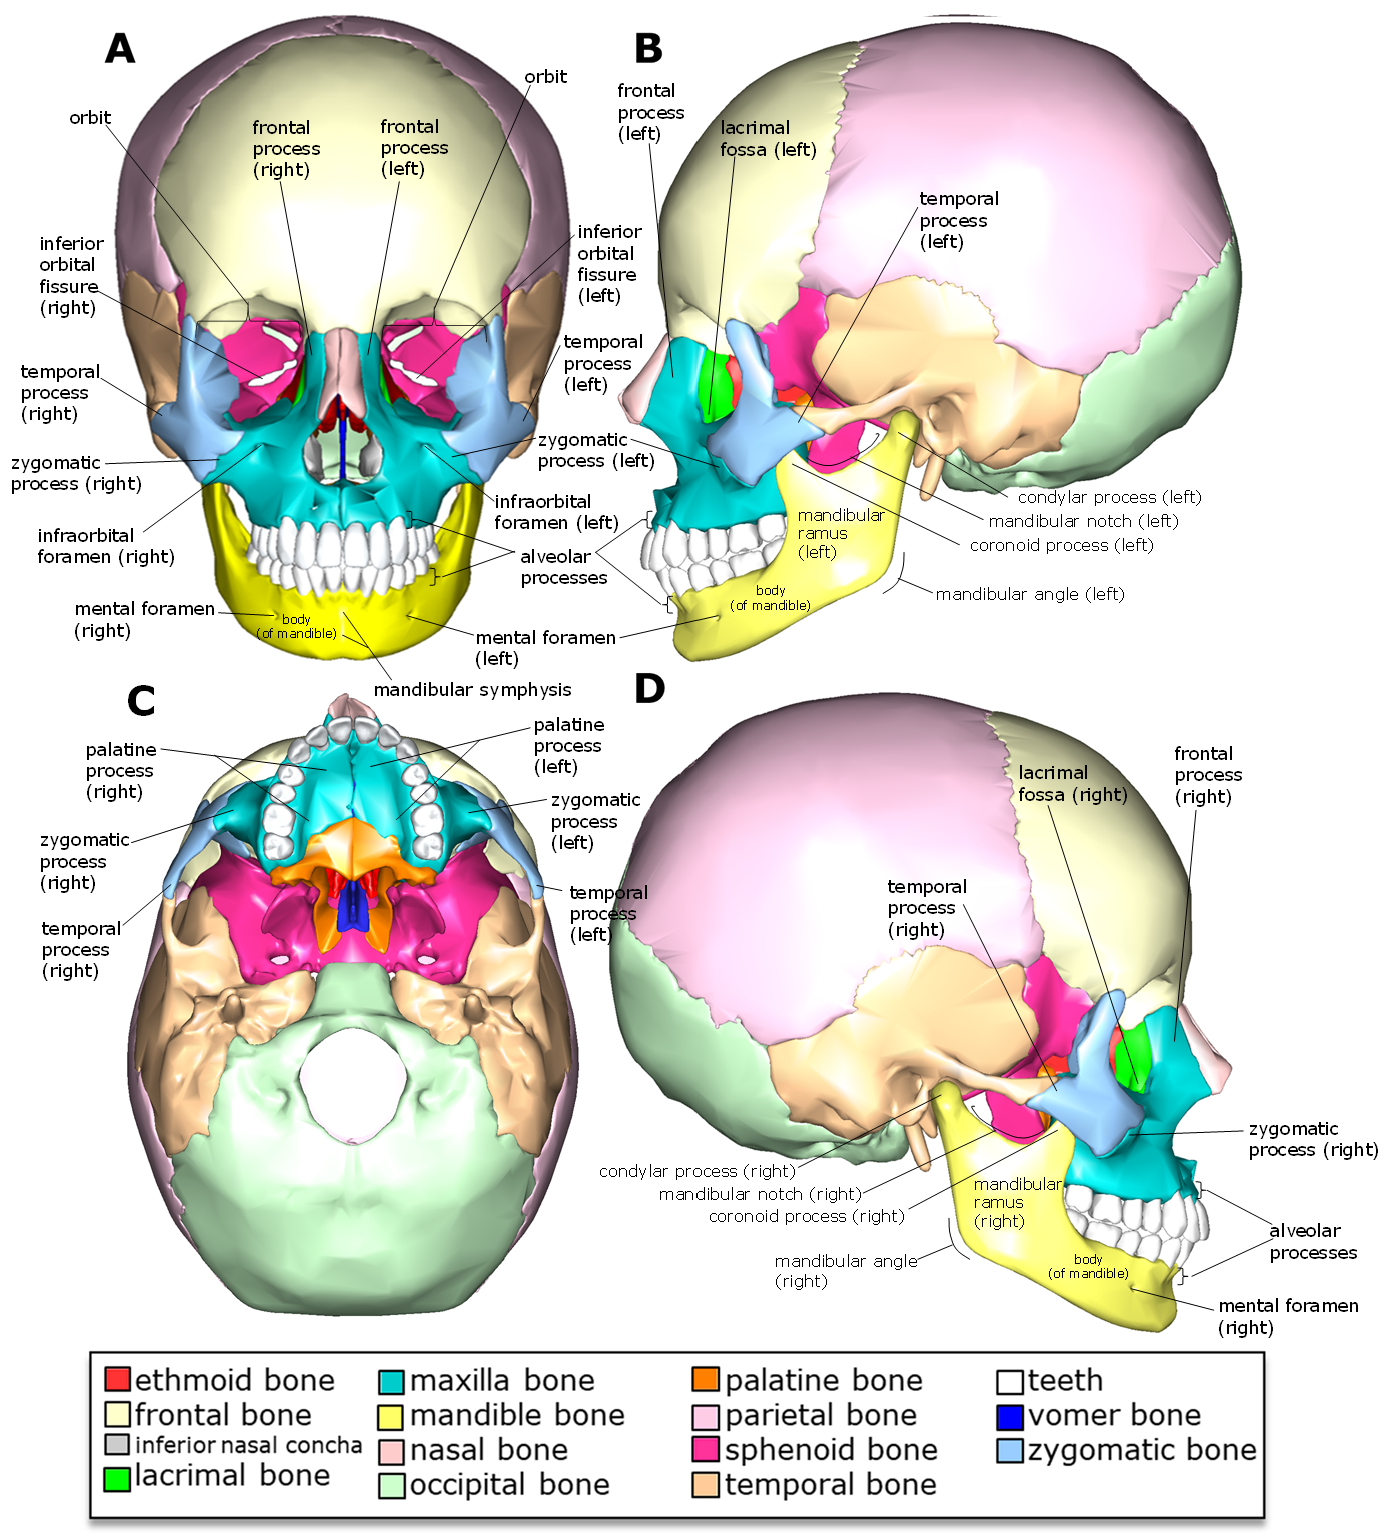 Diagram of the markings of the facial bones